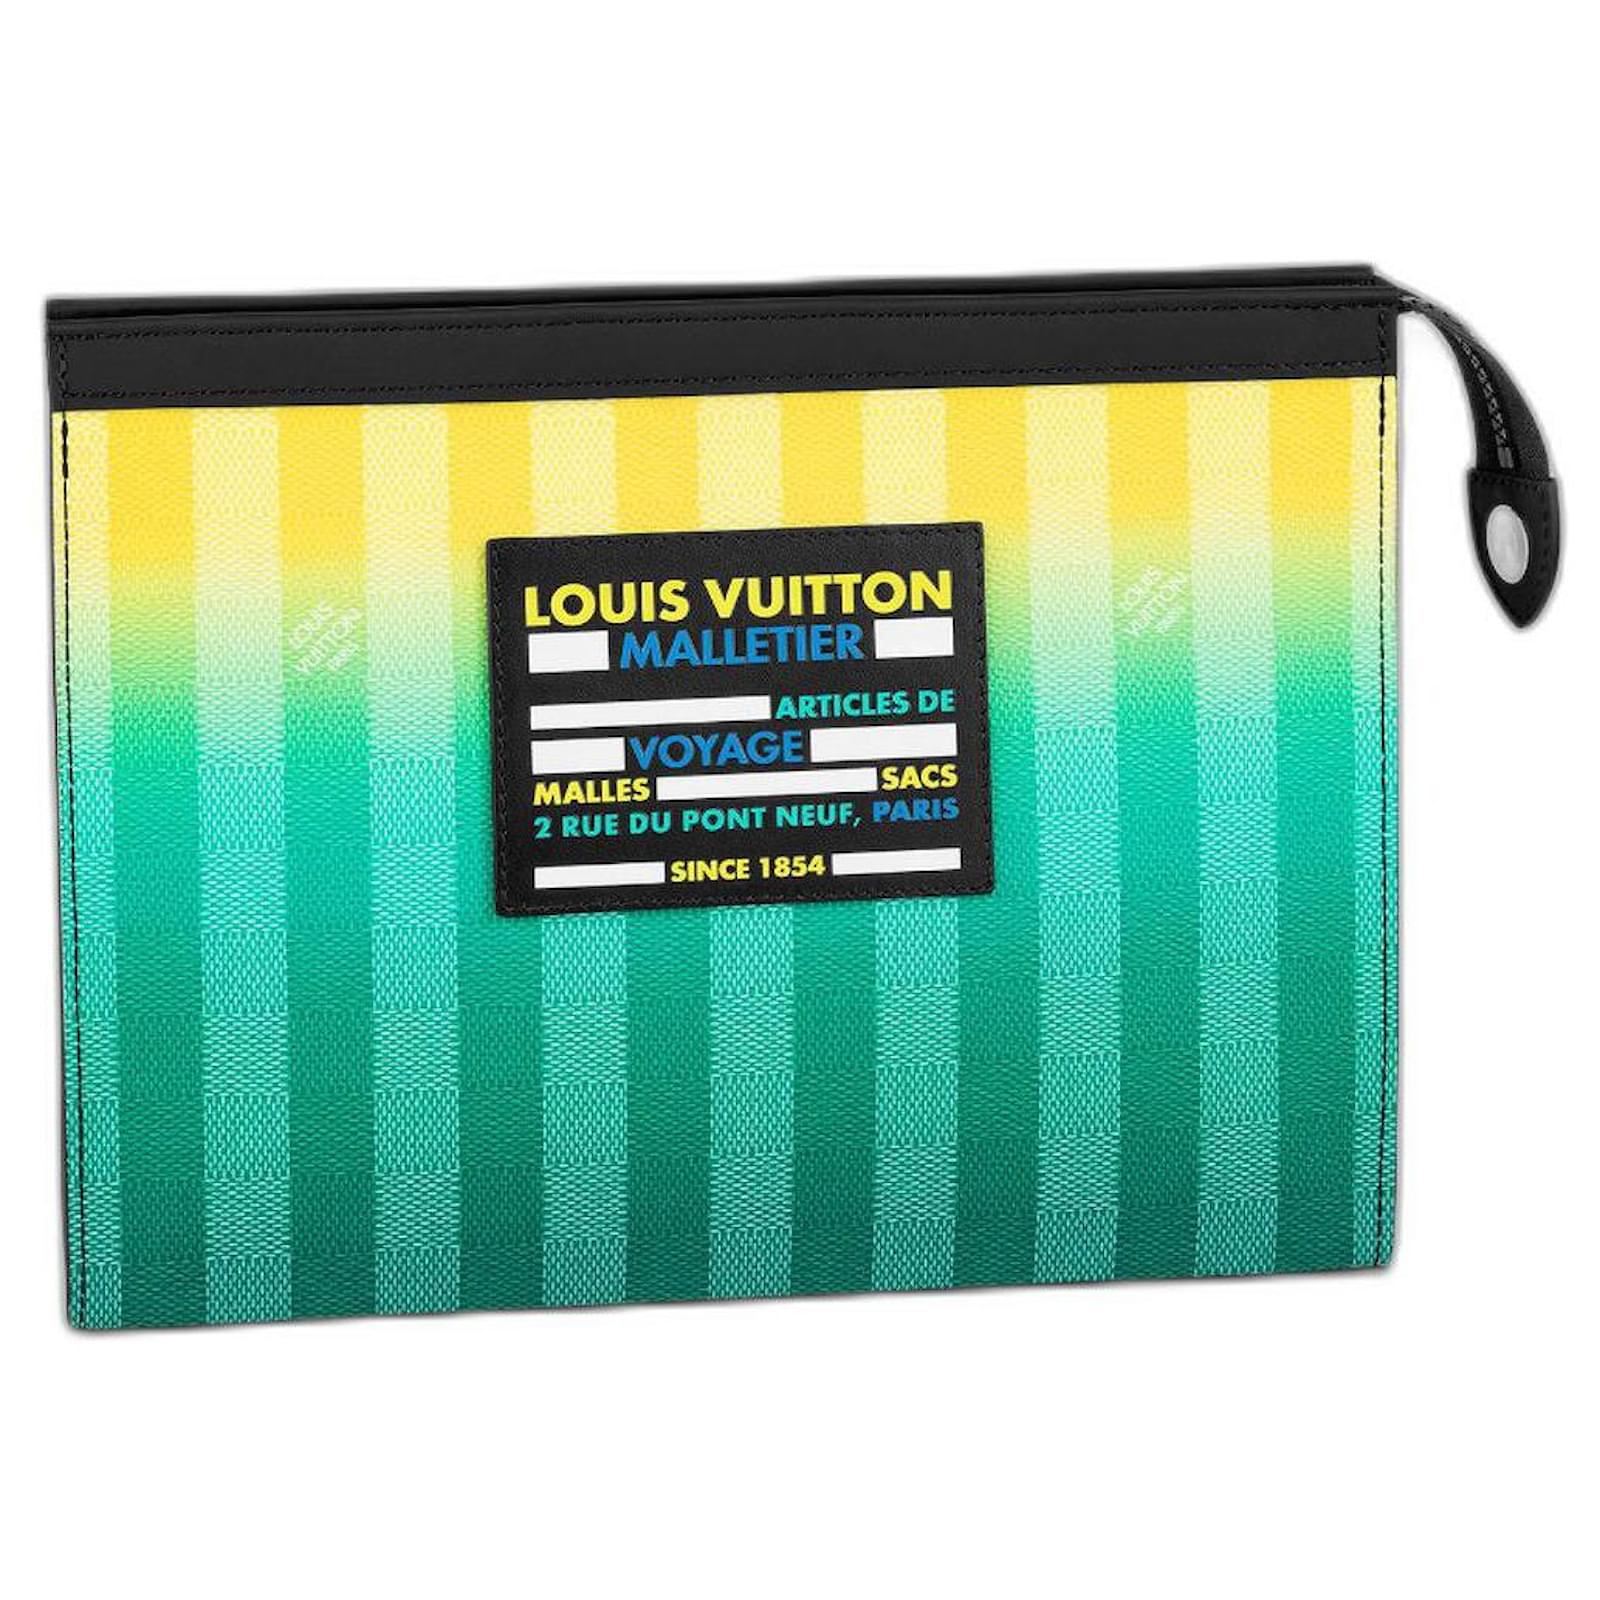 Pre-Owned Louis Vuitton Pochette Voyage 215005/4